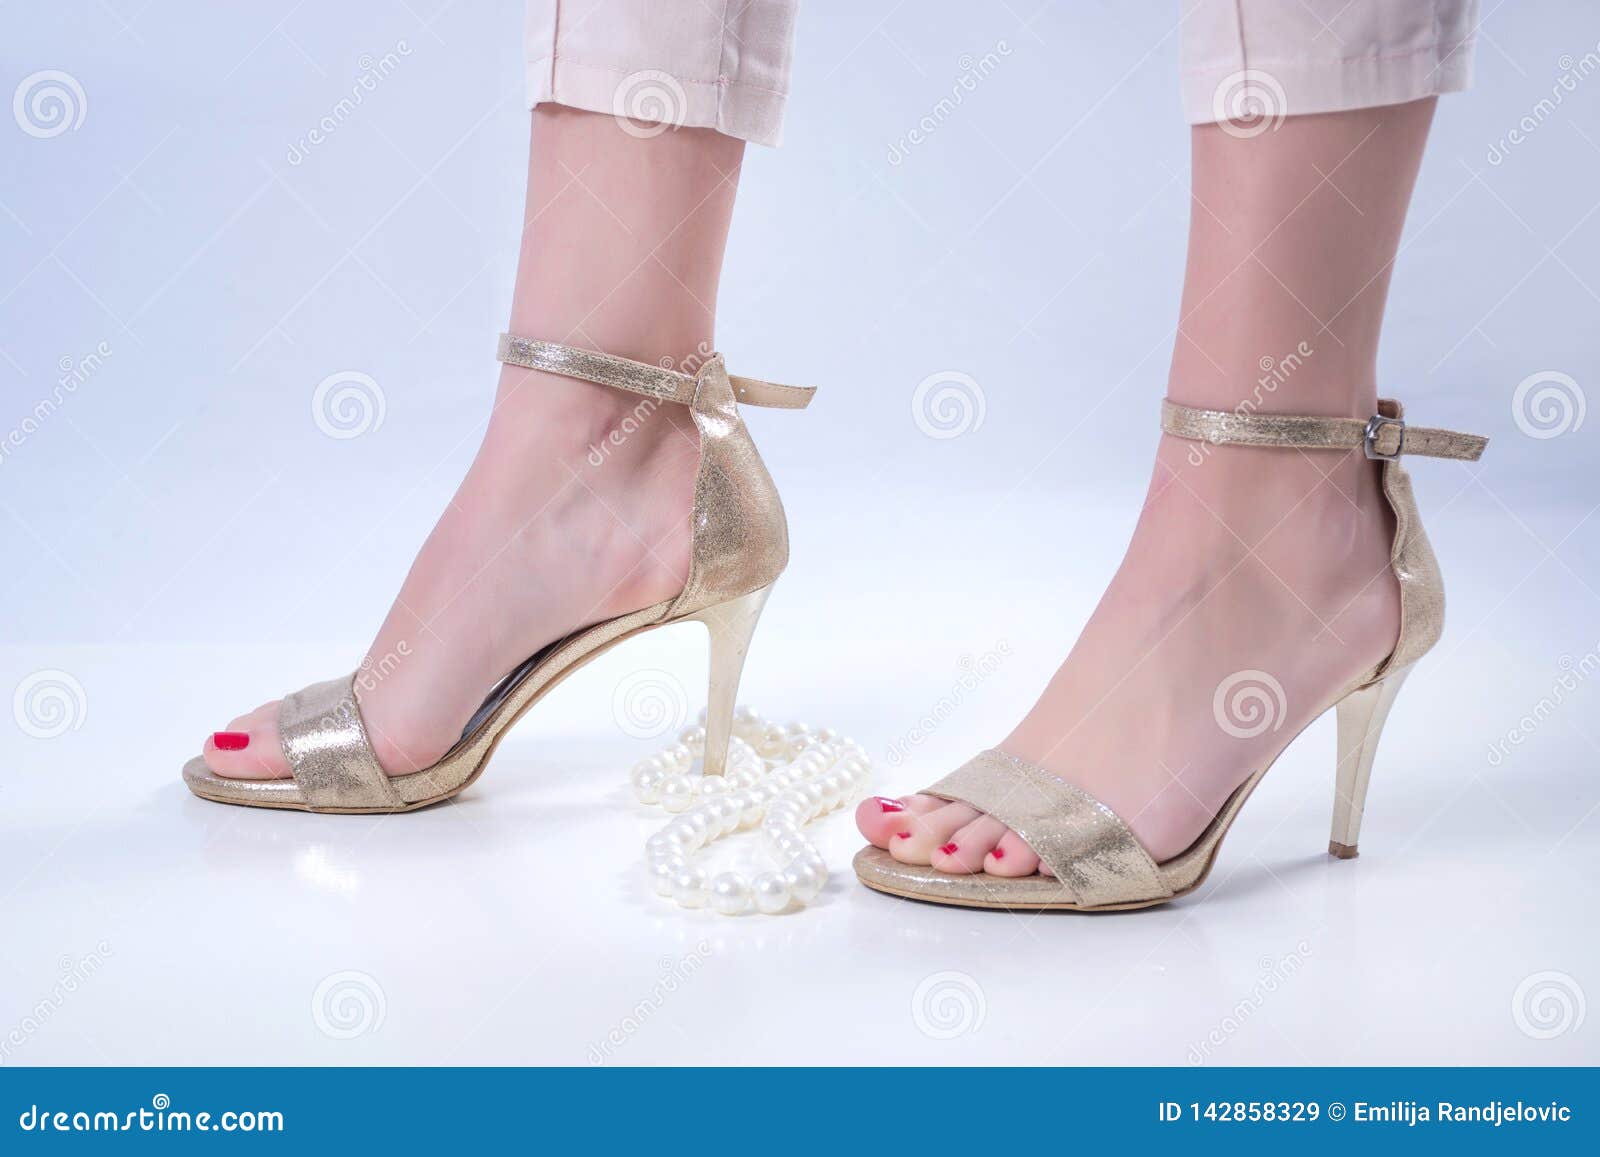 Feet in heels pictures